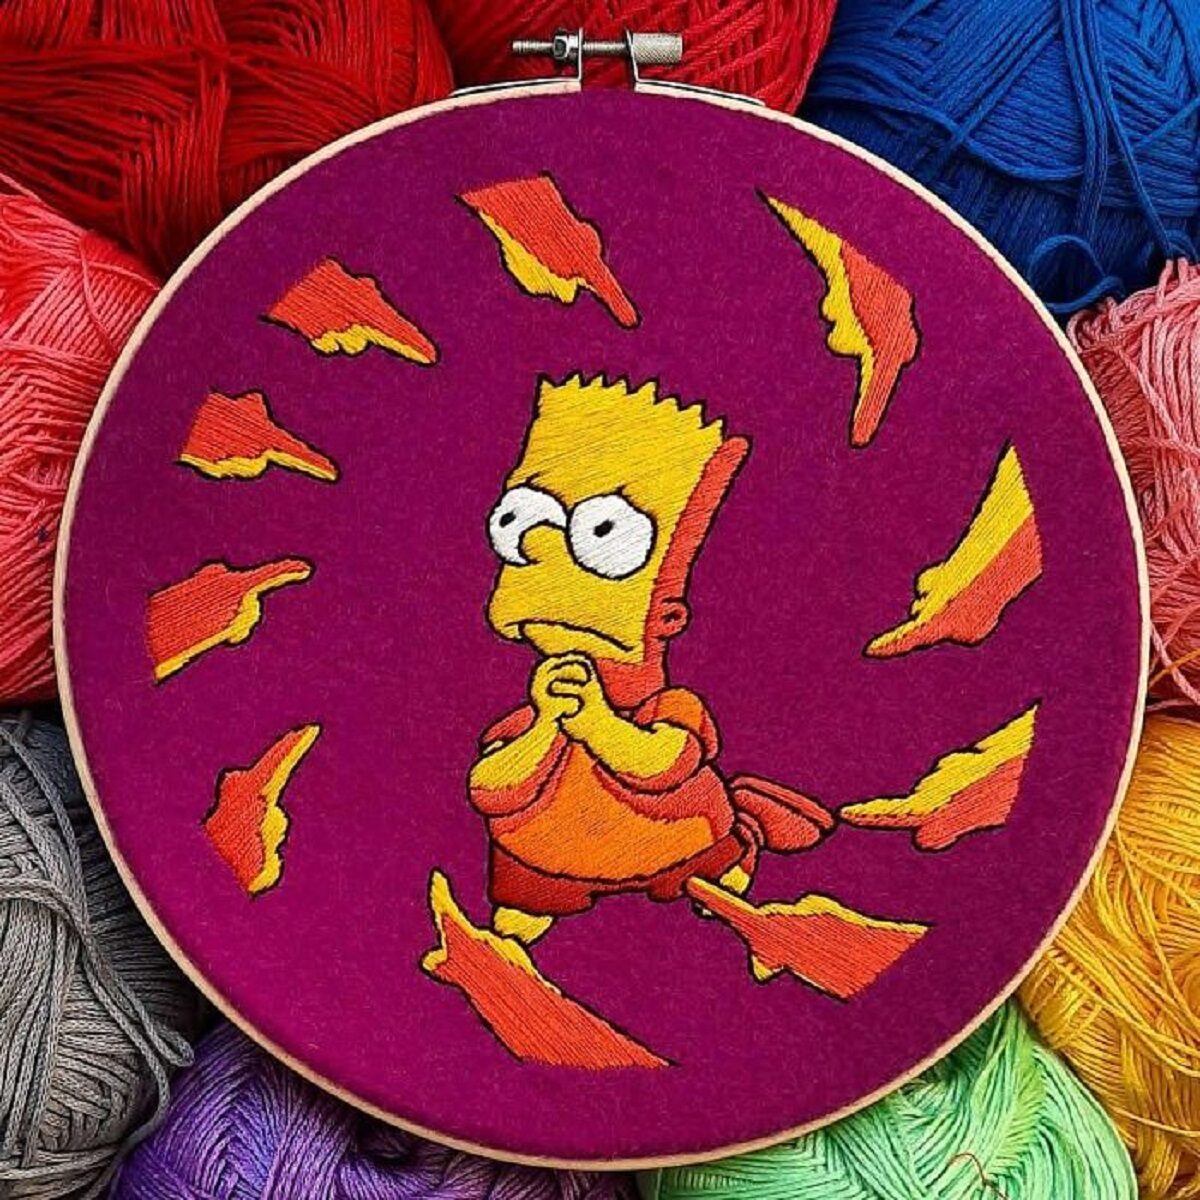 Artista Gabriela Martinez cria bordados de cenas de Os Simpsons 7